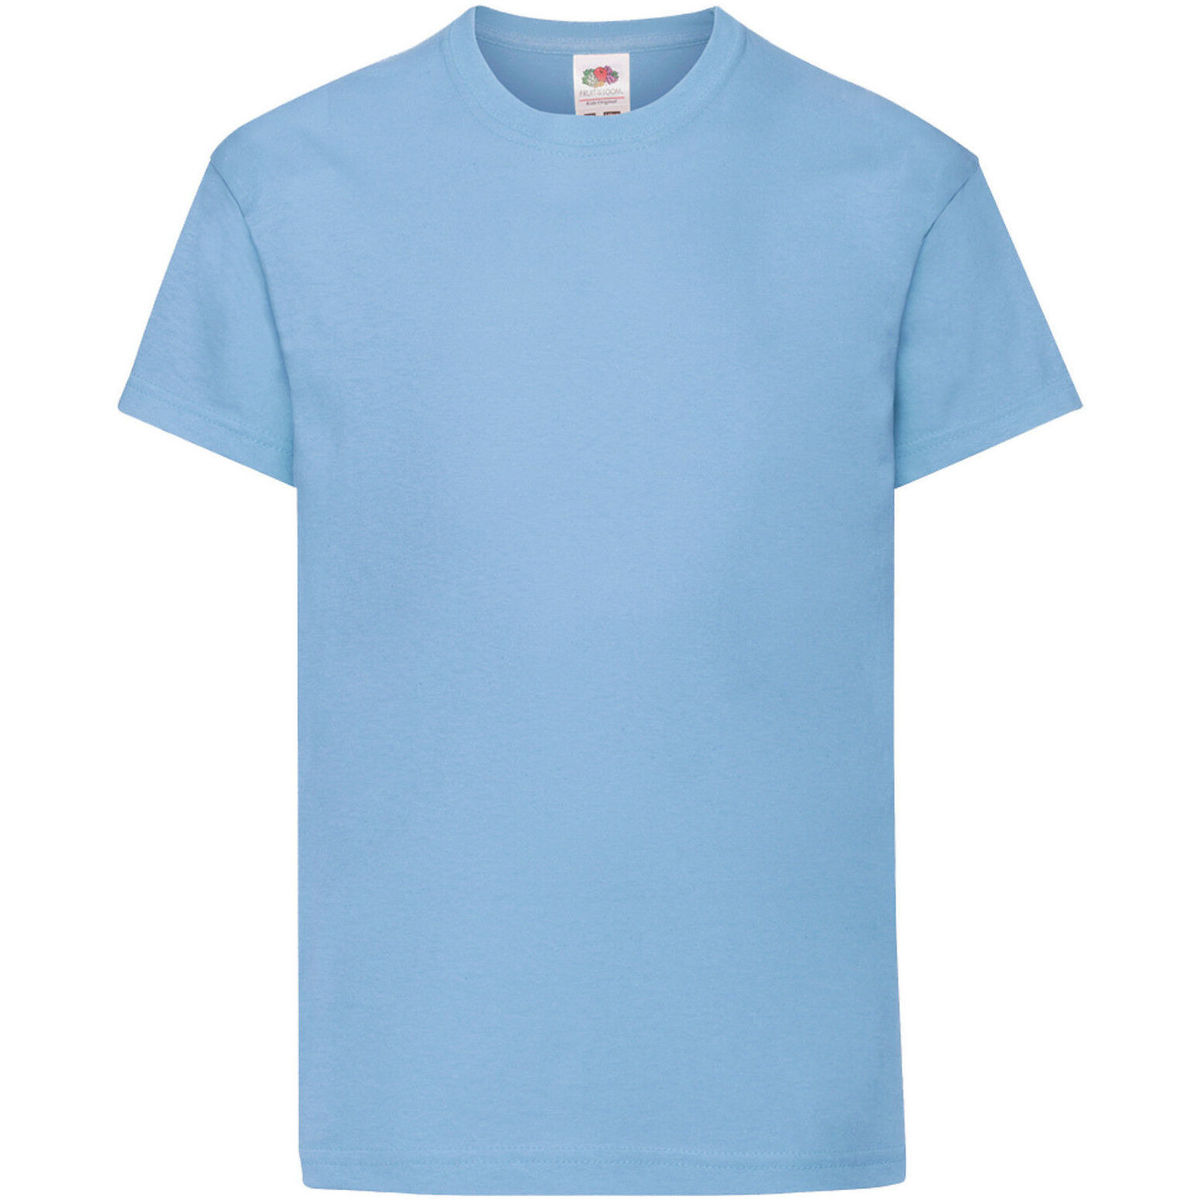 Vêtements Enfant T-shirts Blue manches courtes Black Smiley© Edition Charm Hoodie Dress 61019 Bleu